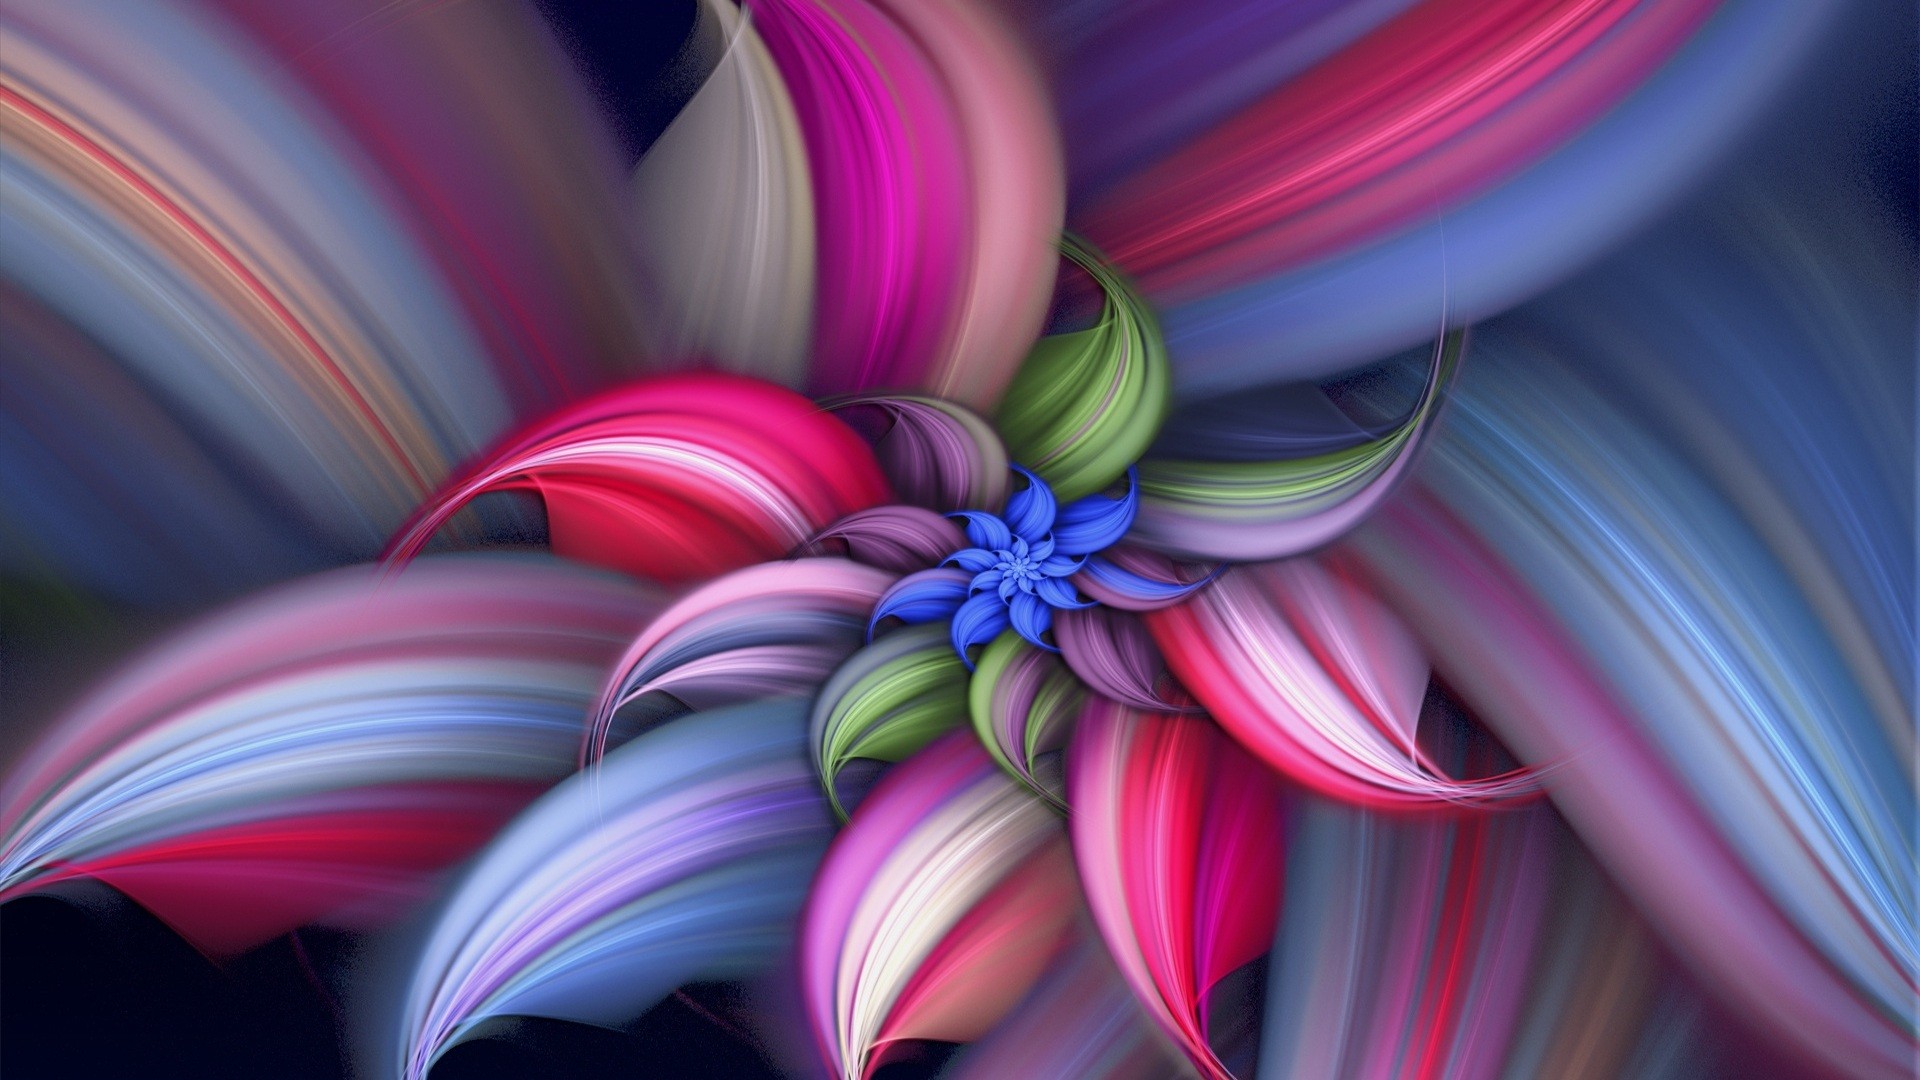 Abstract Flower Vector Design HD Wallpaper